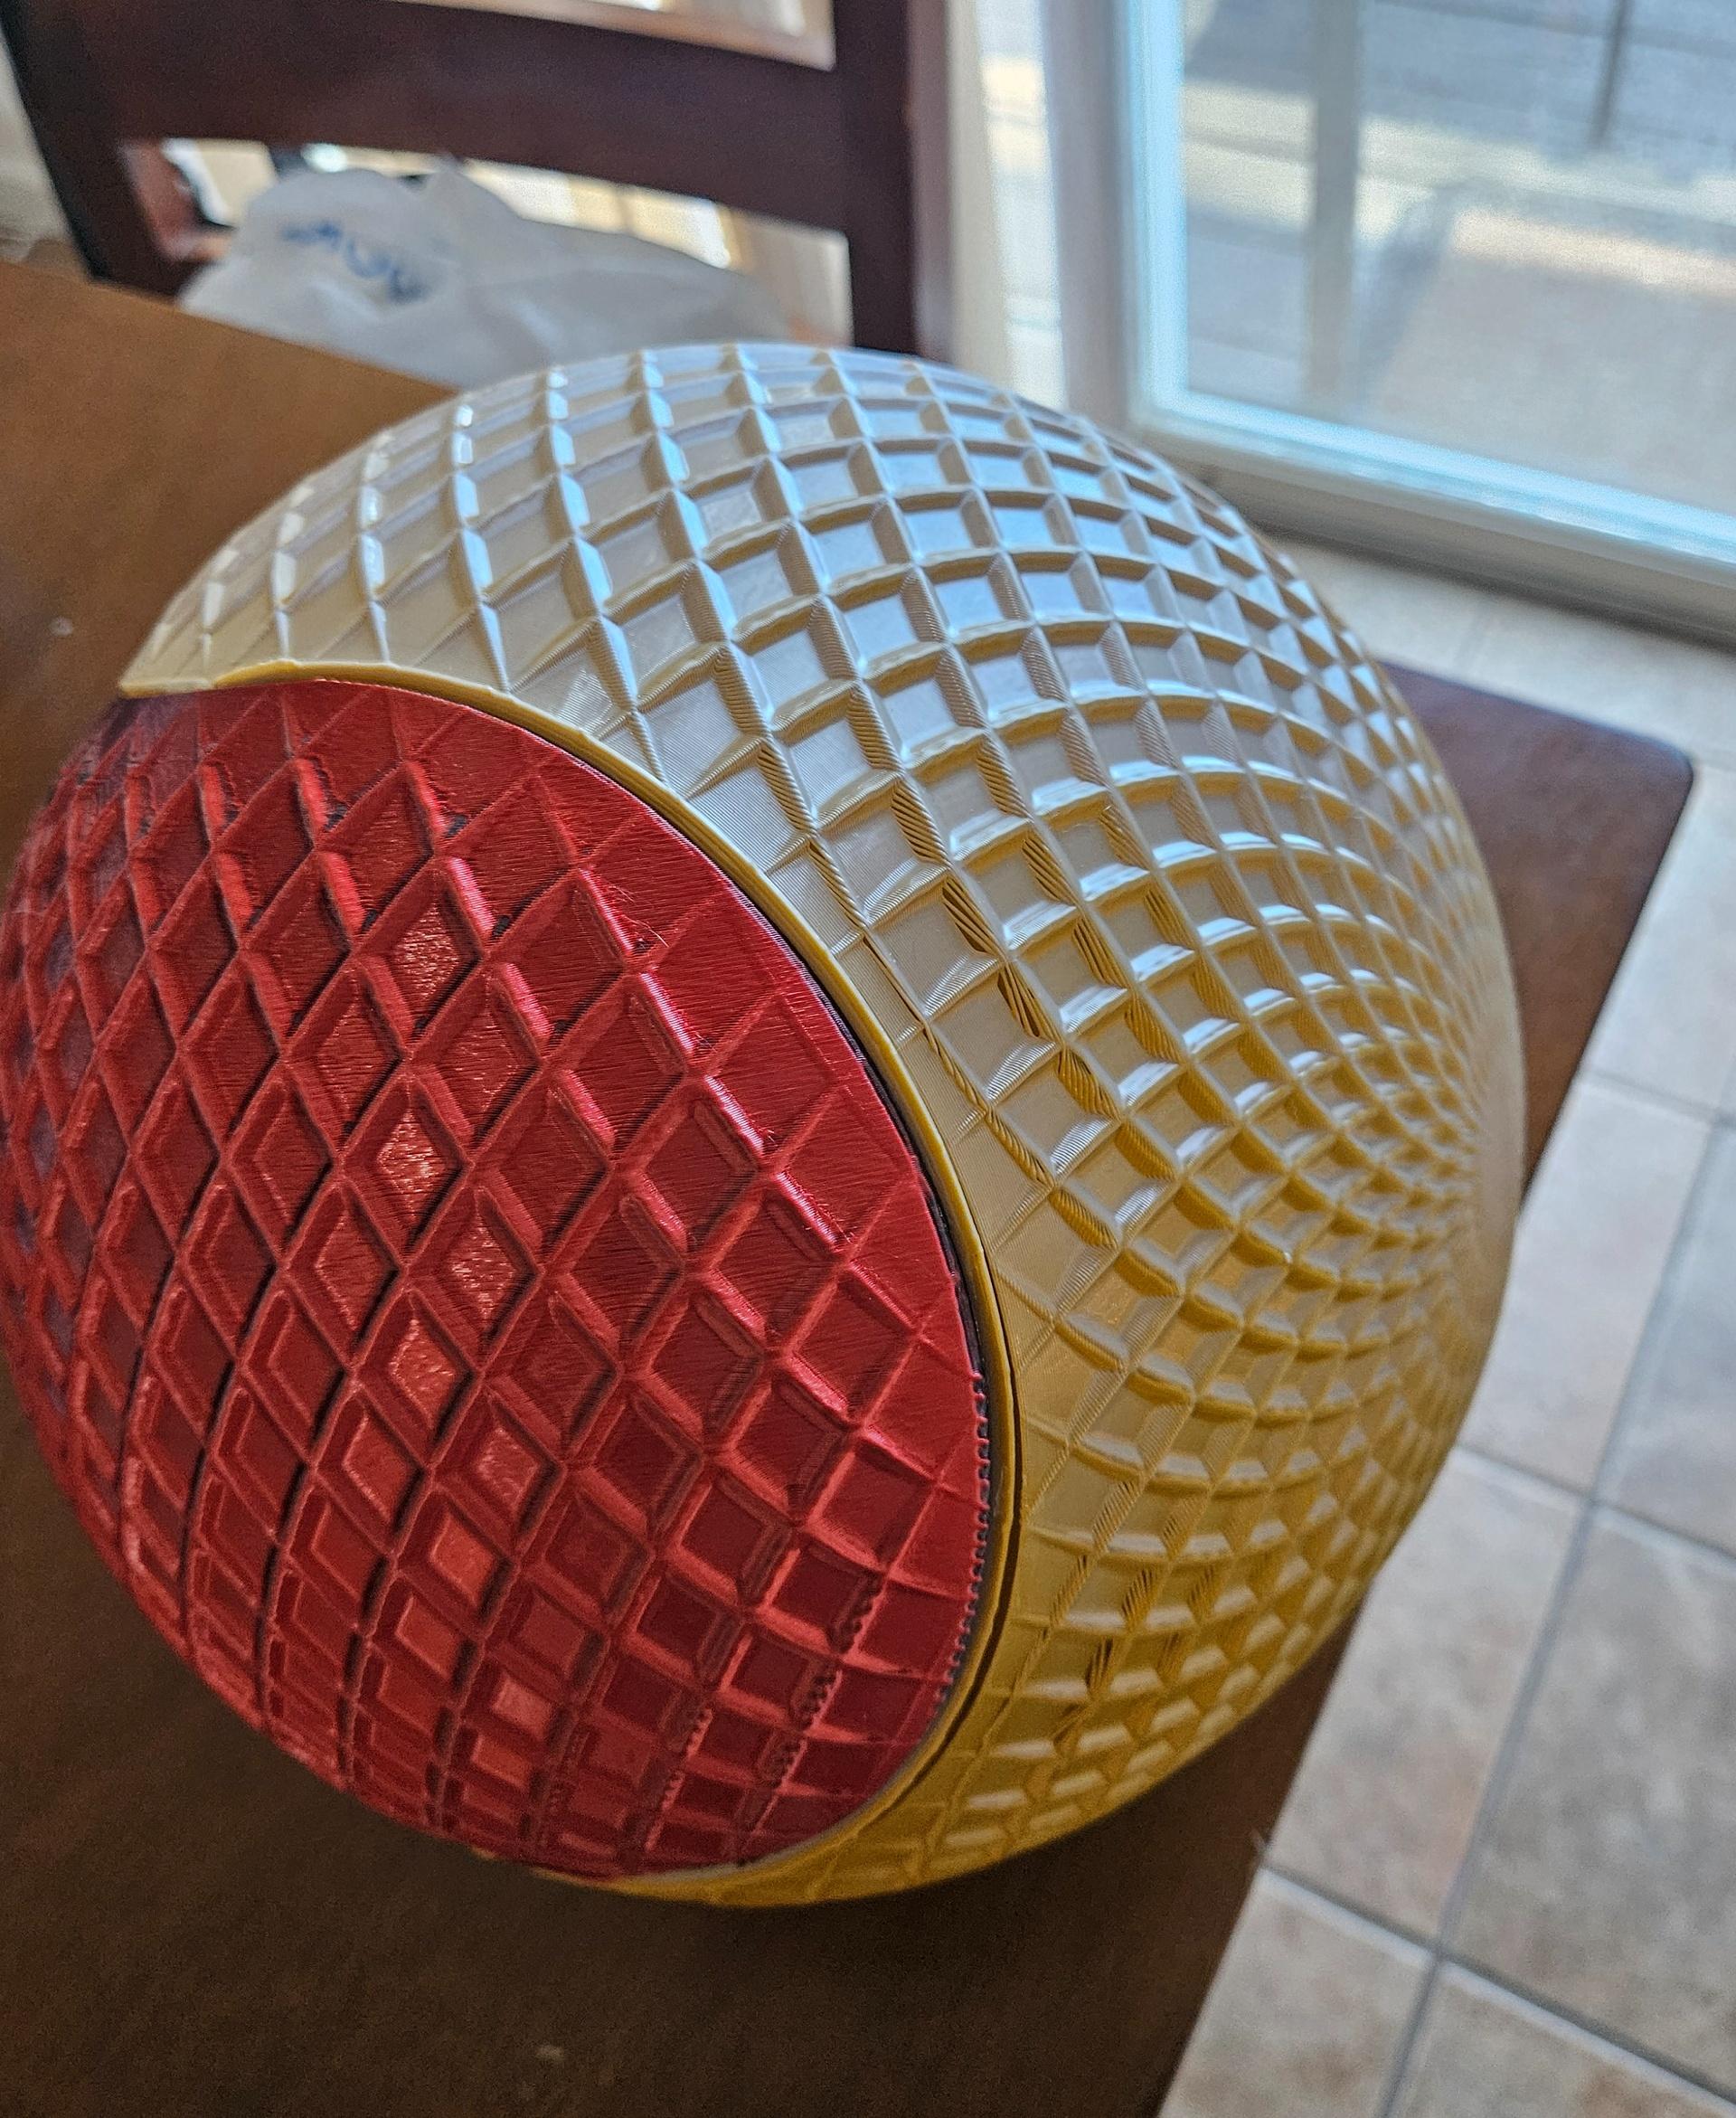 Giant Spiralized Sphere 3d model